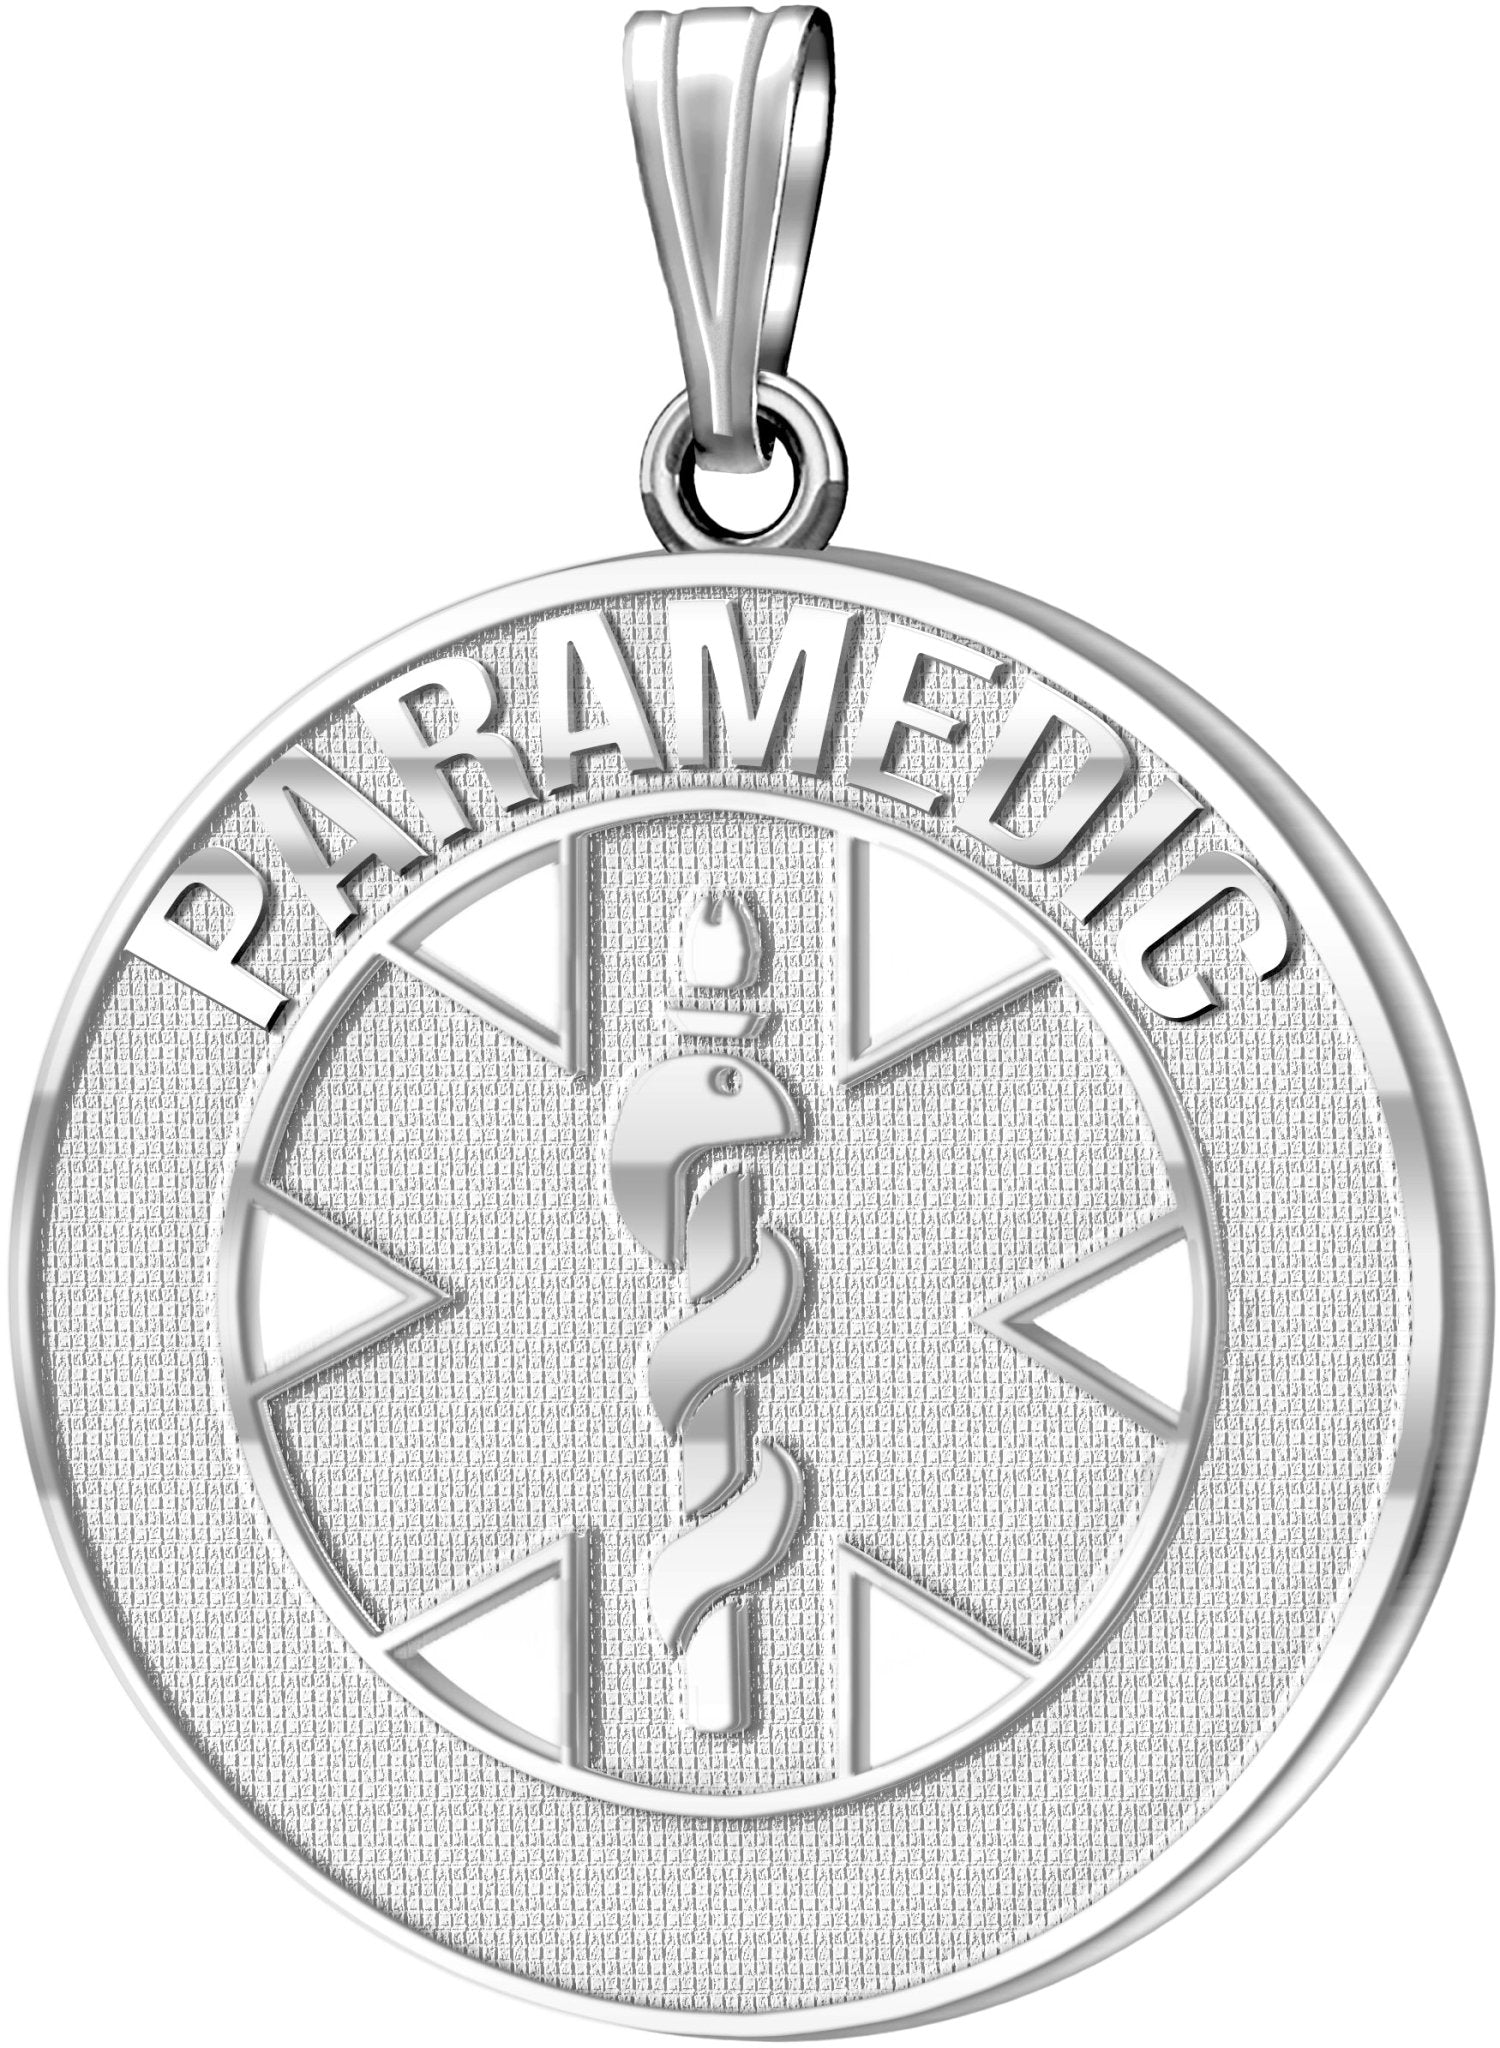 26mm 925 Sterling Silver Paramedic / EMT Medical Alert Medal Pendant Necklace, 3 Color Options - US Jewels